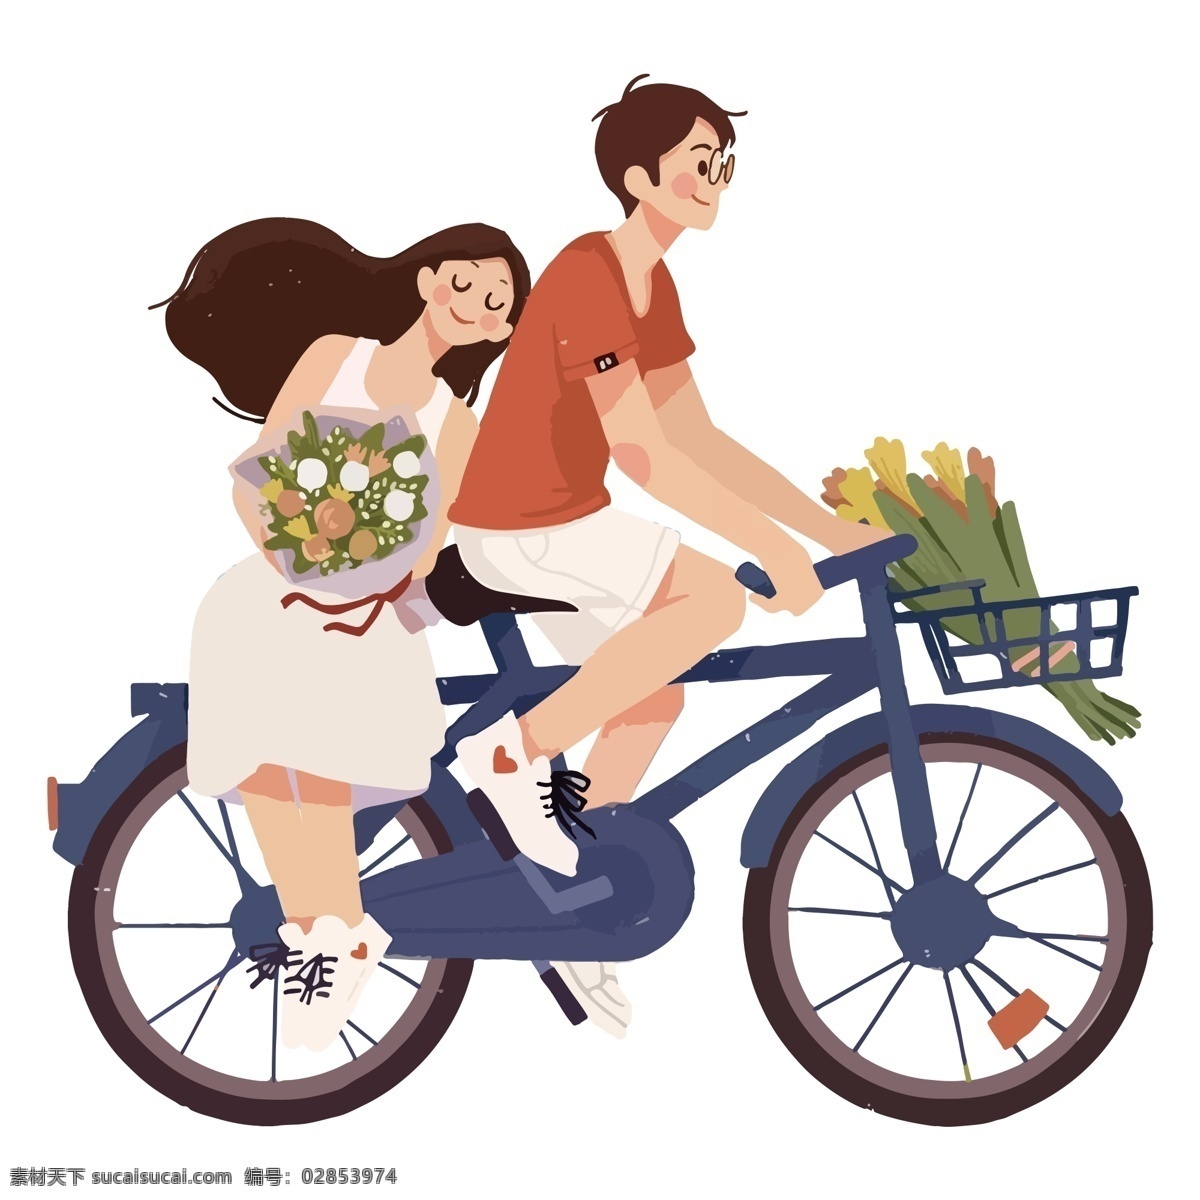 骑 单车 情侣 元素 骑单车 抱 鲜花 女孩 人物元素 精致人物 手绘元素 装饰图案 设计元素 卡通元素